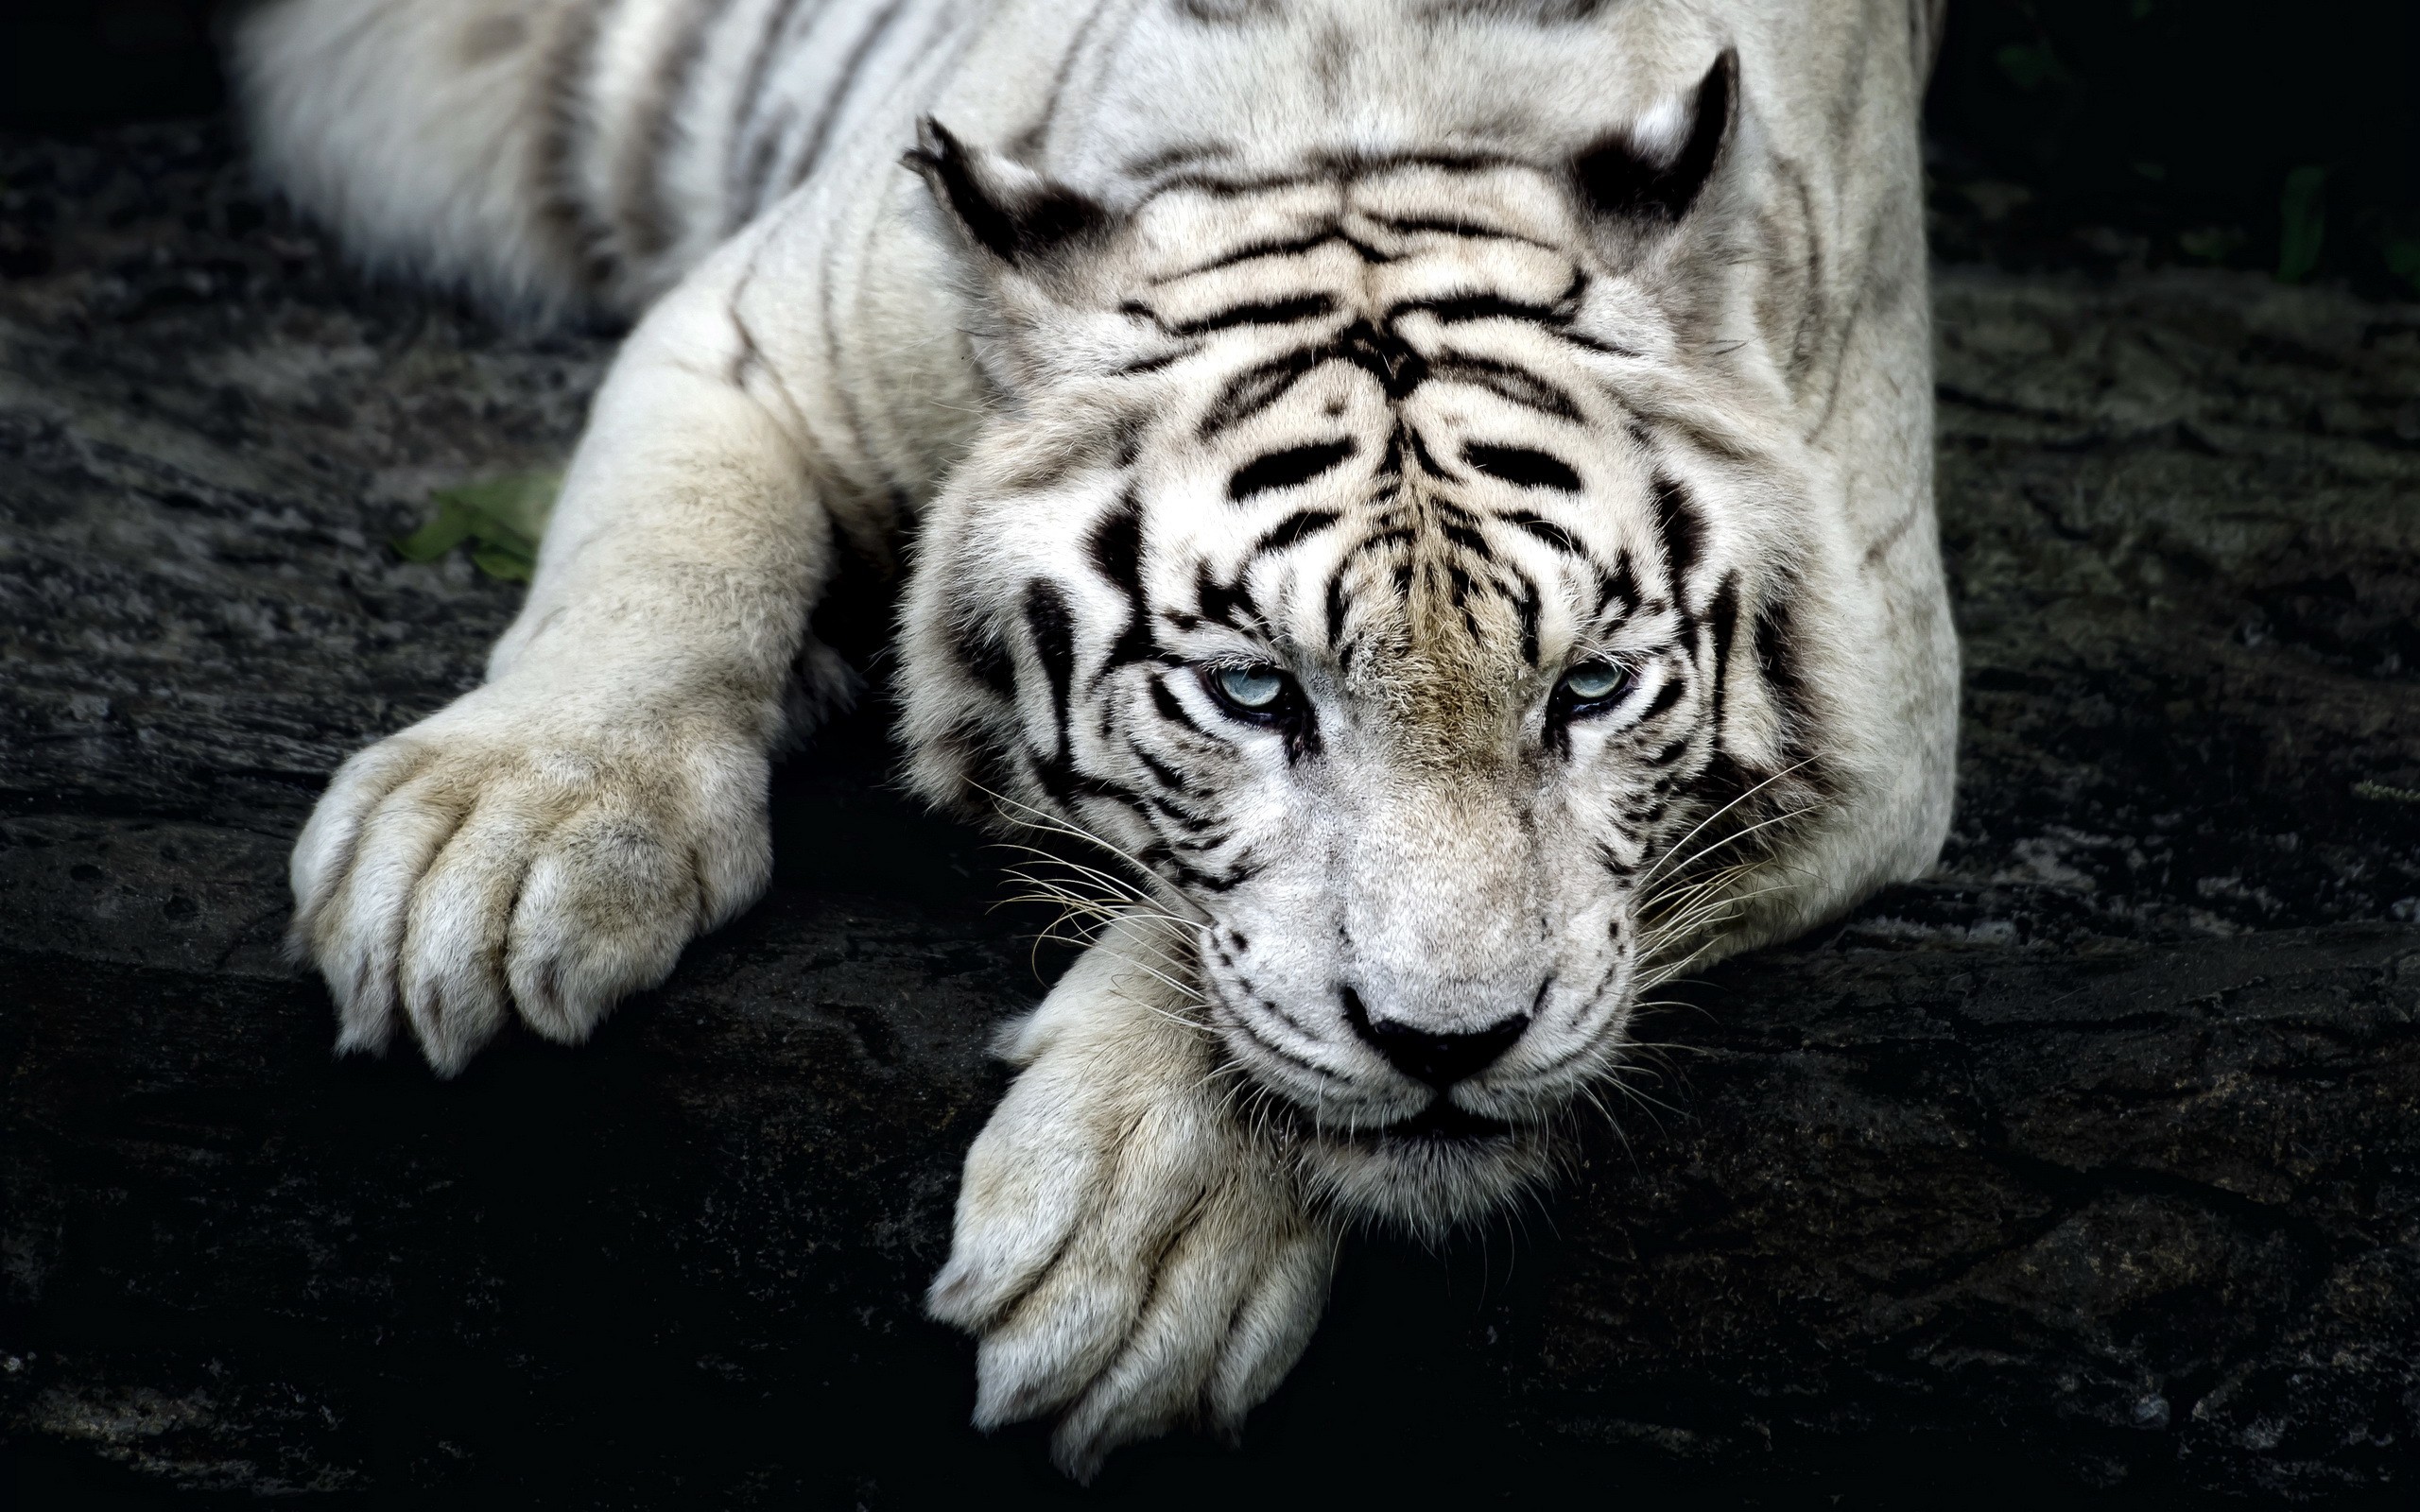 General 2560x1600 big cats tiger animals nature white tigers mammals closeup